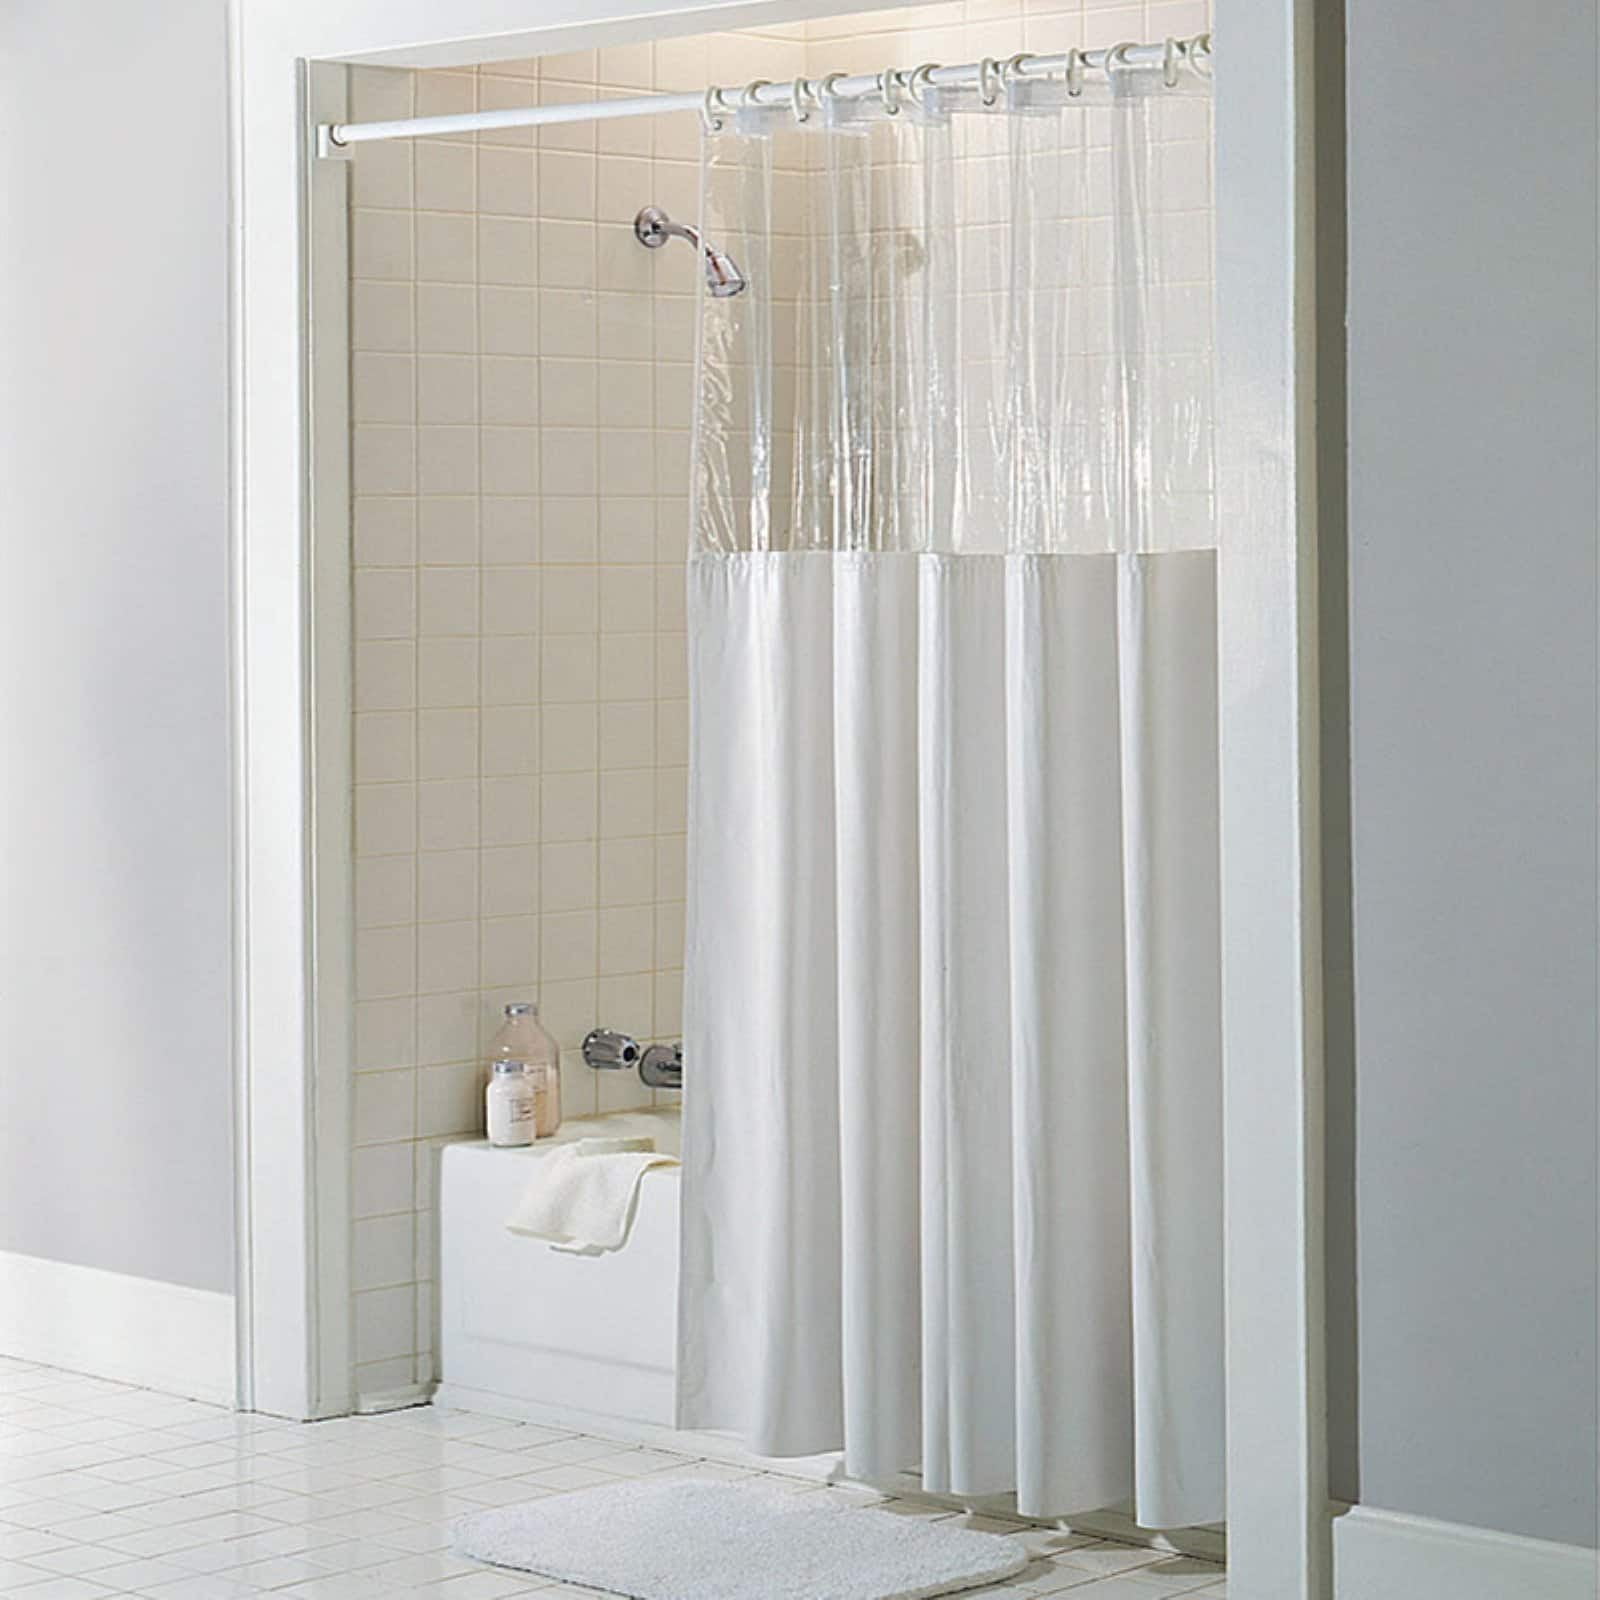 See Through Top Clear/White 10 Gauge Vinyl Bath Shower Curtain 72" x 72" 